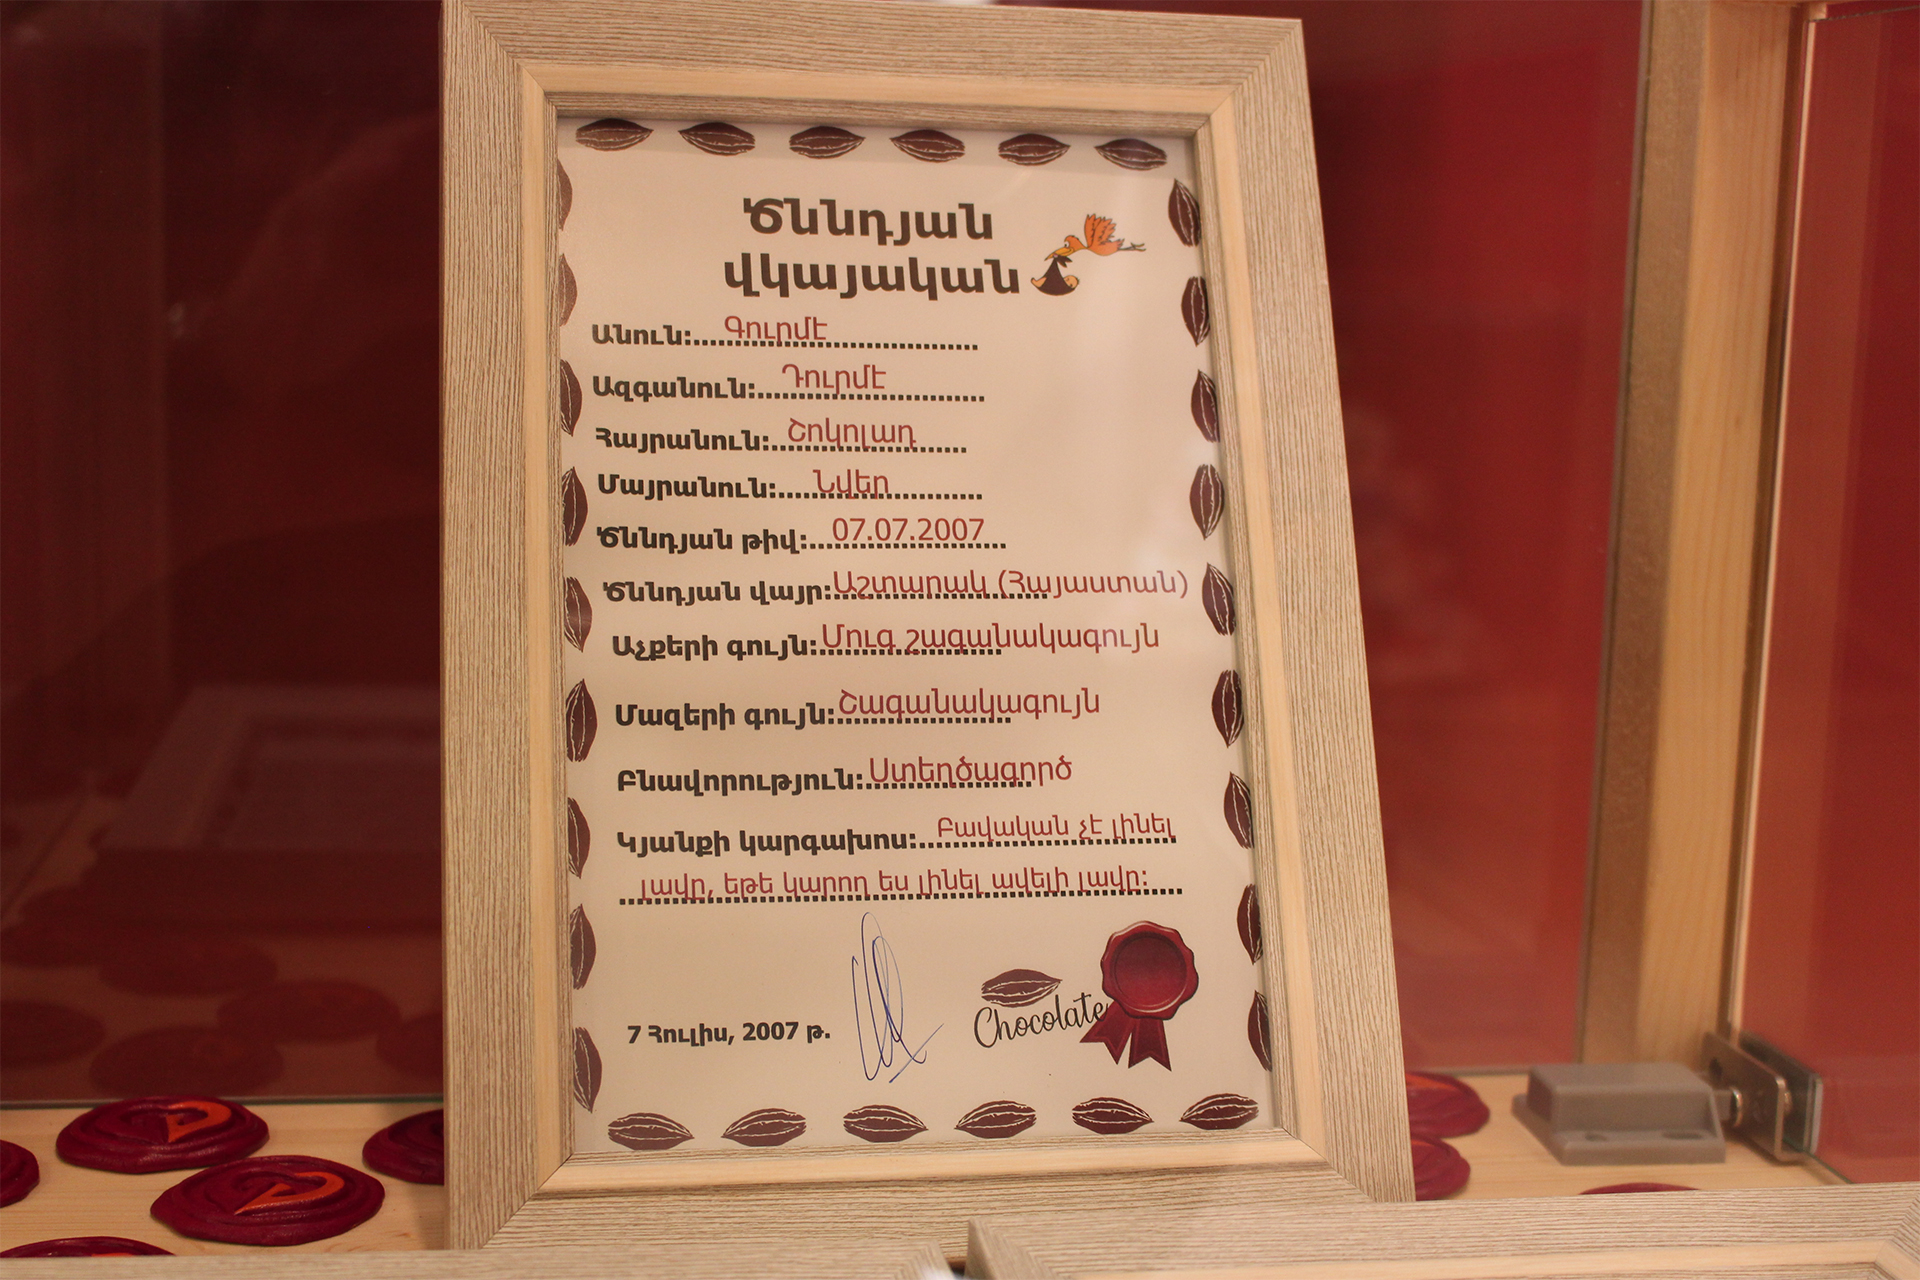 Հայկական շոկոլադի առաջին թանգարանը՝ Աշտարակում